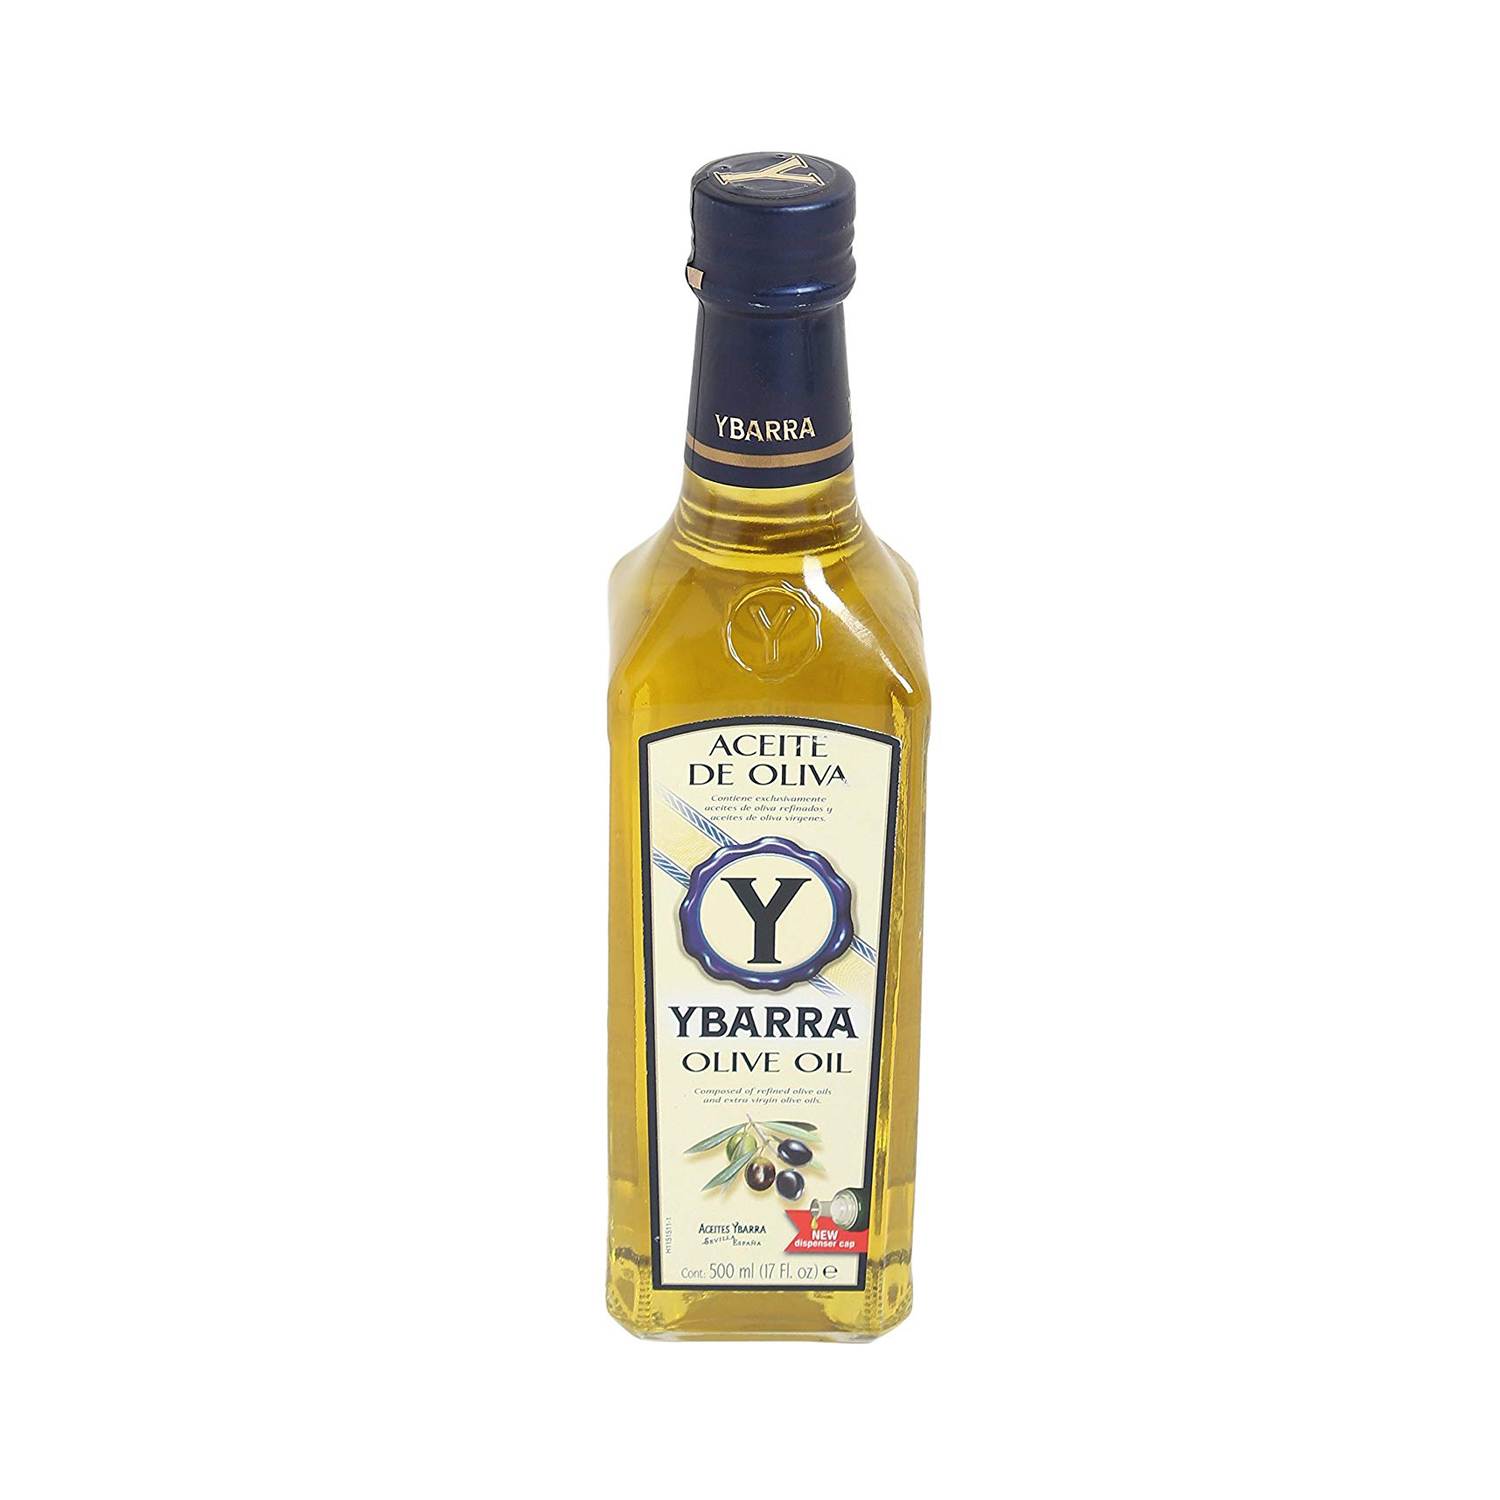 Масло с 6 месяцев. Ybarra масло оливковое 100%. Масло Ябарра. Pure масло оливы. Оливковое масло Ибарра Интенсо.